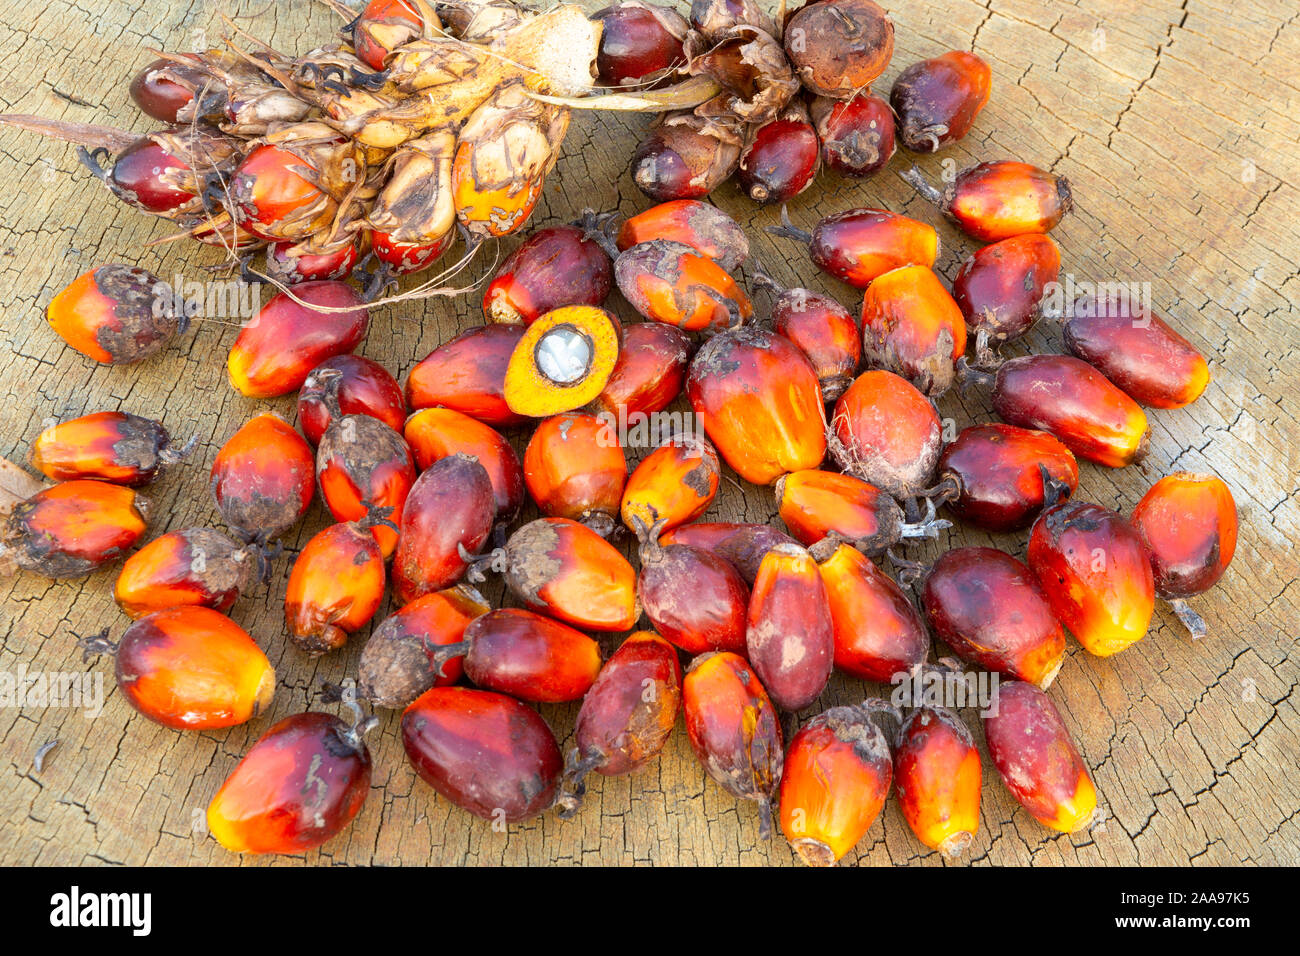 Nahaufnahme einer Gruppe von Palmöl-Früchten (Elaeis guineensis) und einer halbierten Frucht, die das Innere auf rustikalem Holztisch zeigt. Konzept der Natur, Landwirtschaft. Stockfoto